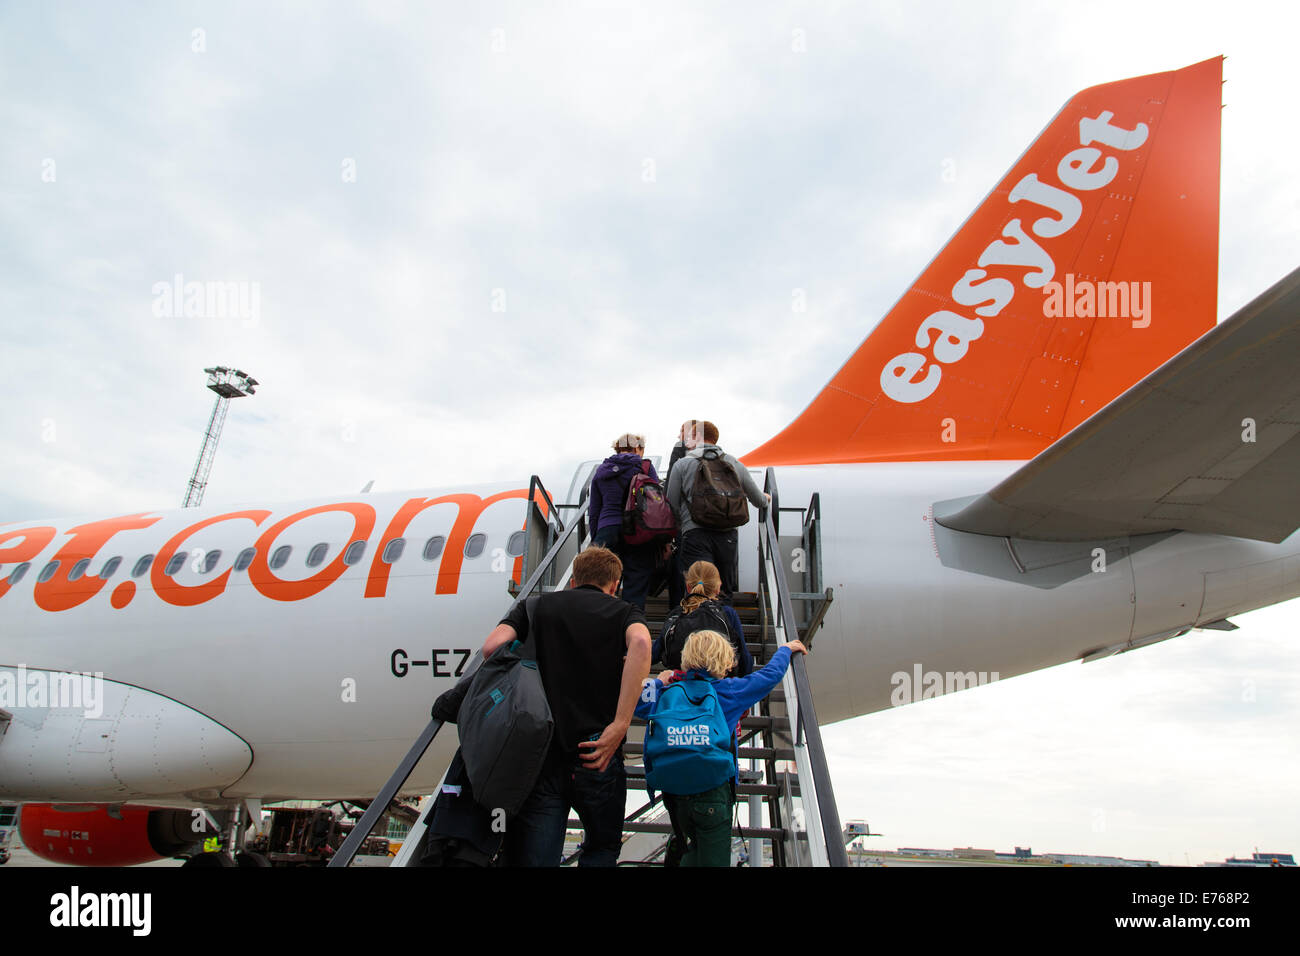 Passengers boarding an Easy Jet Airplane, Copenhagen, Denmark Stock Photo